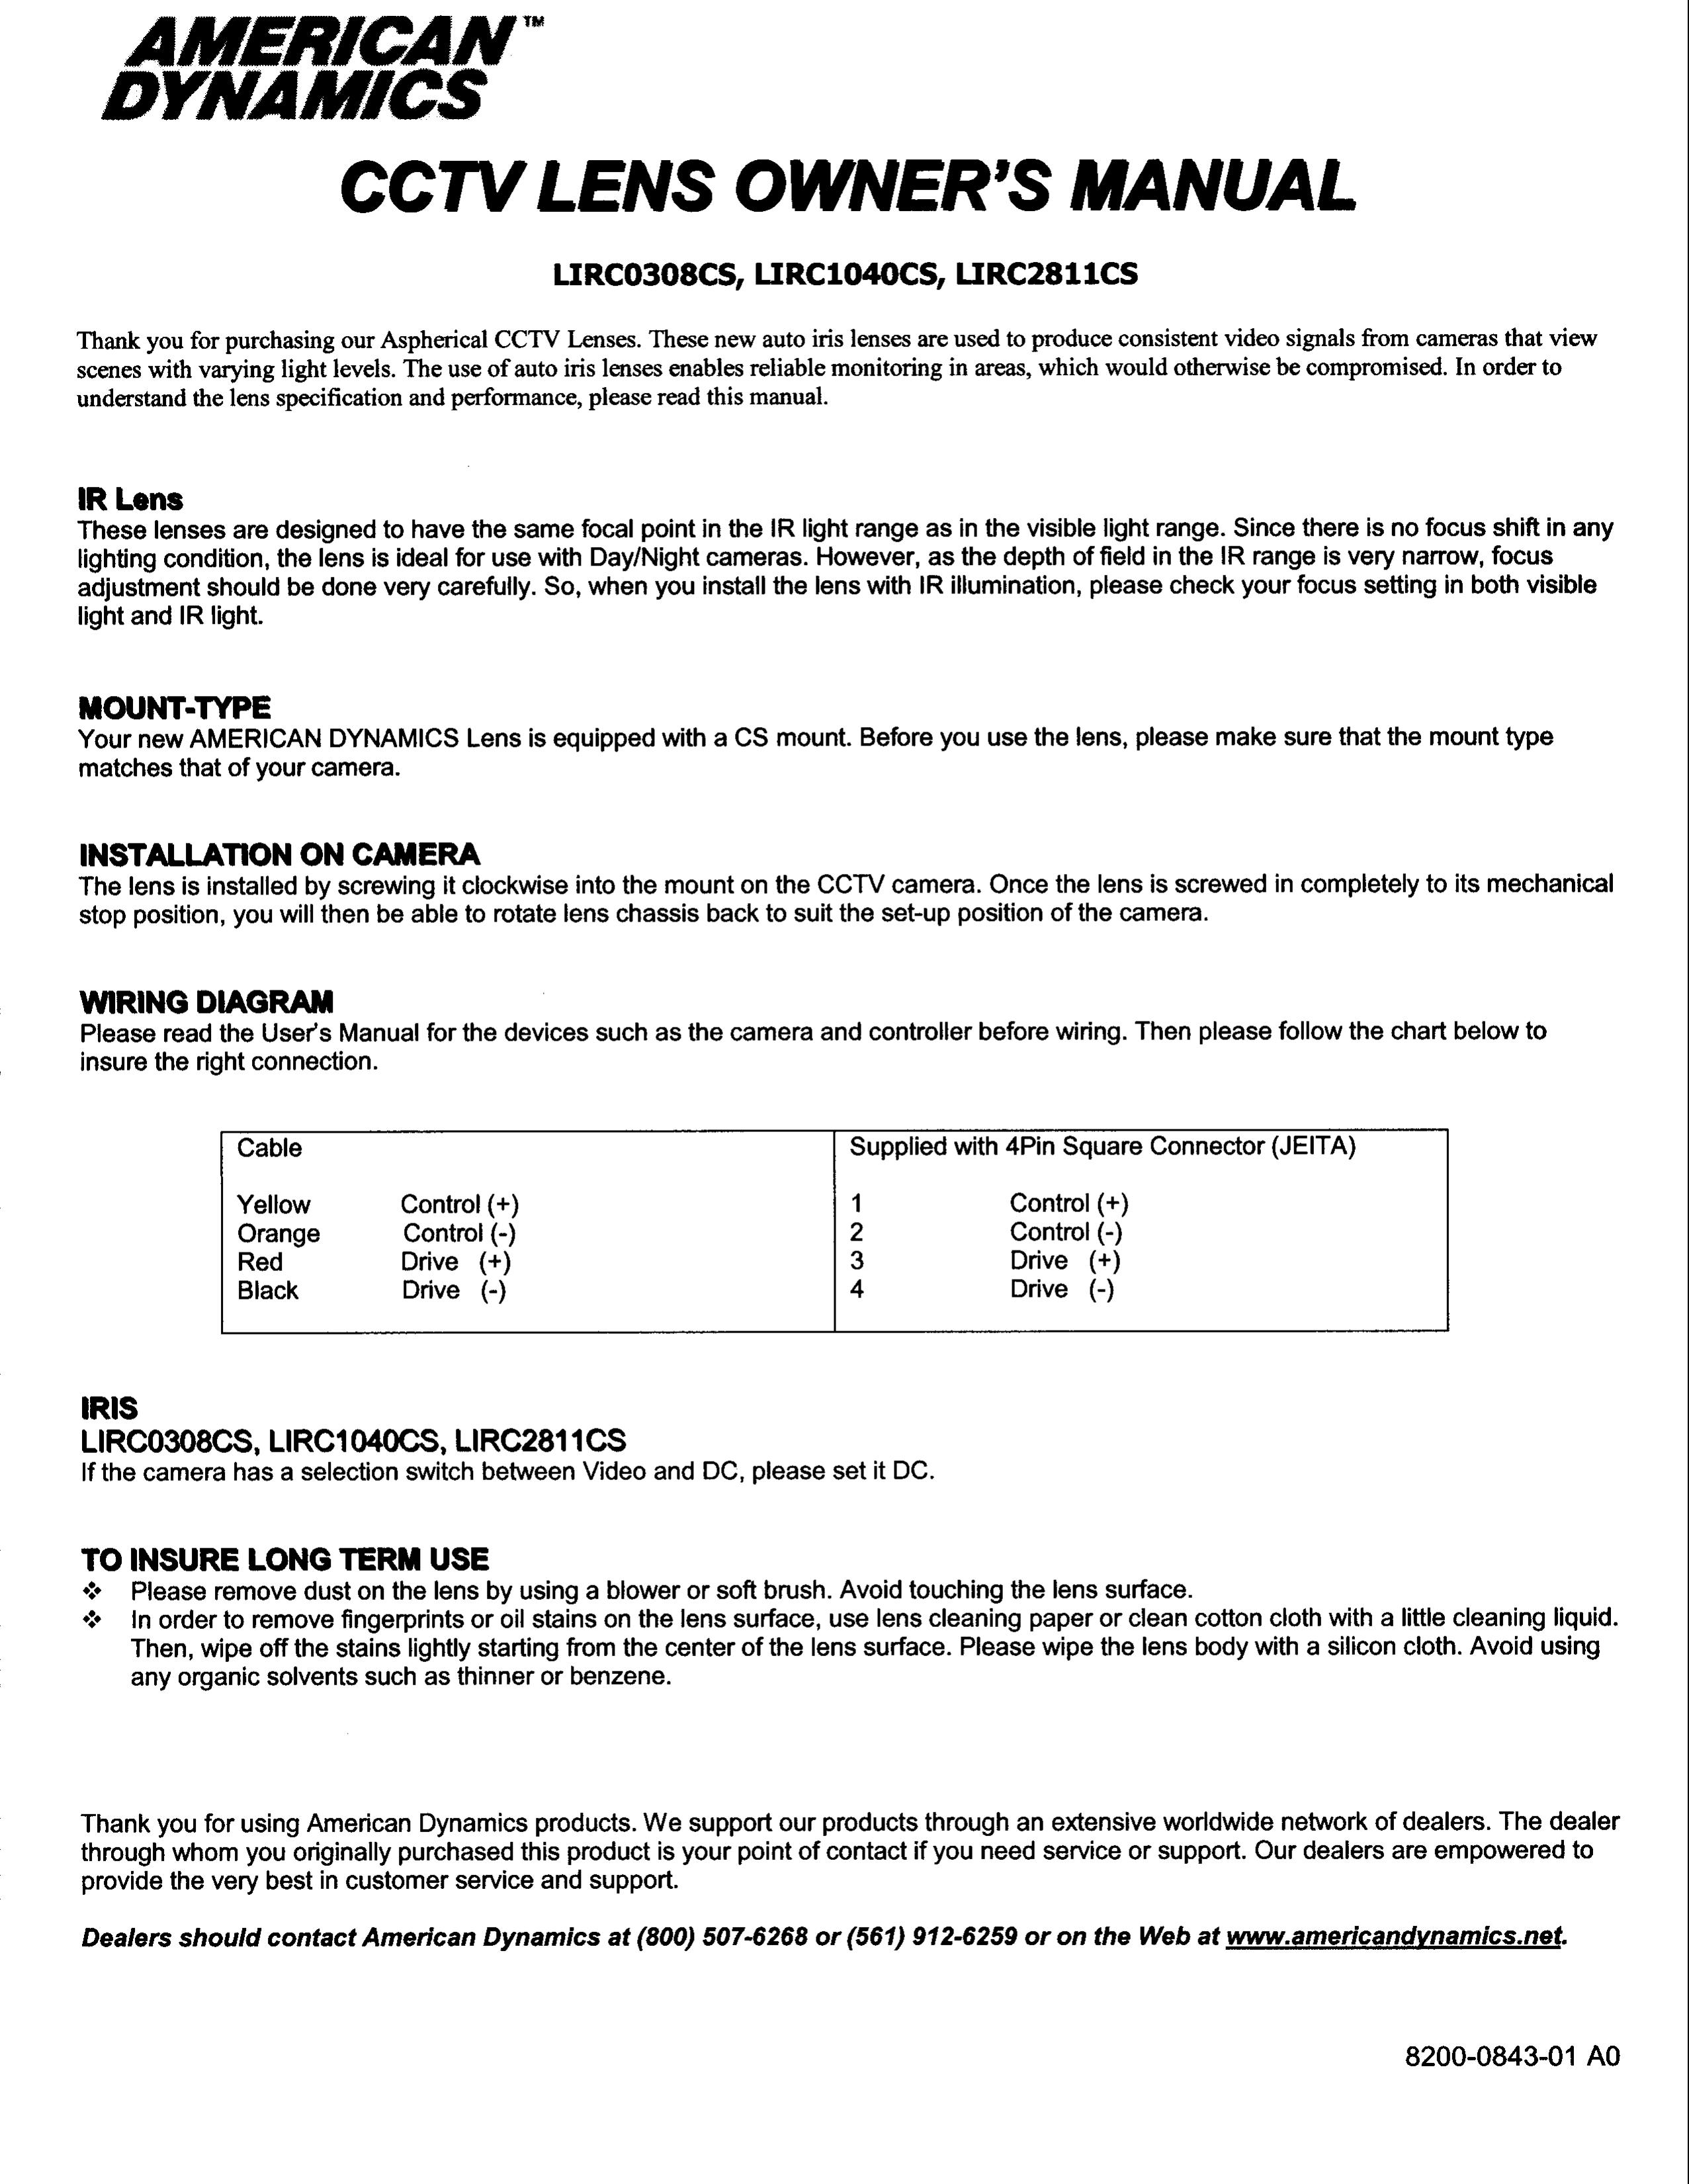 American Dynamics LIRC0308CS Camera Lens User Manual